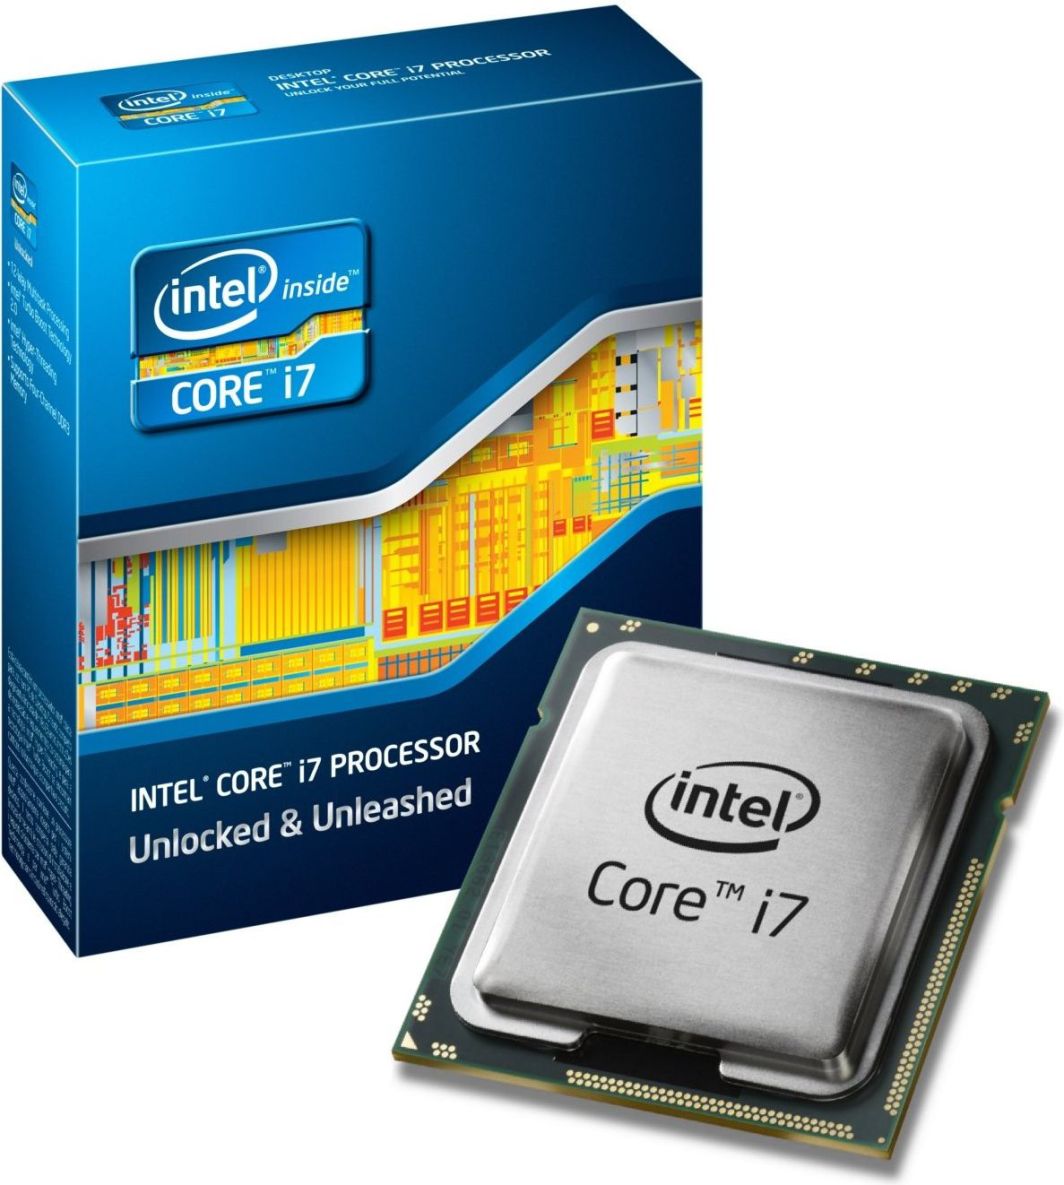 Интел i7 купить. Процессор Intel® Core™ i7. Процессор Интел Core i7. Процессор для ноутбука Intel Core i7. Процессор Интел коре ай 7.